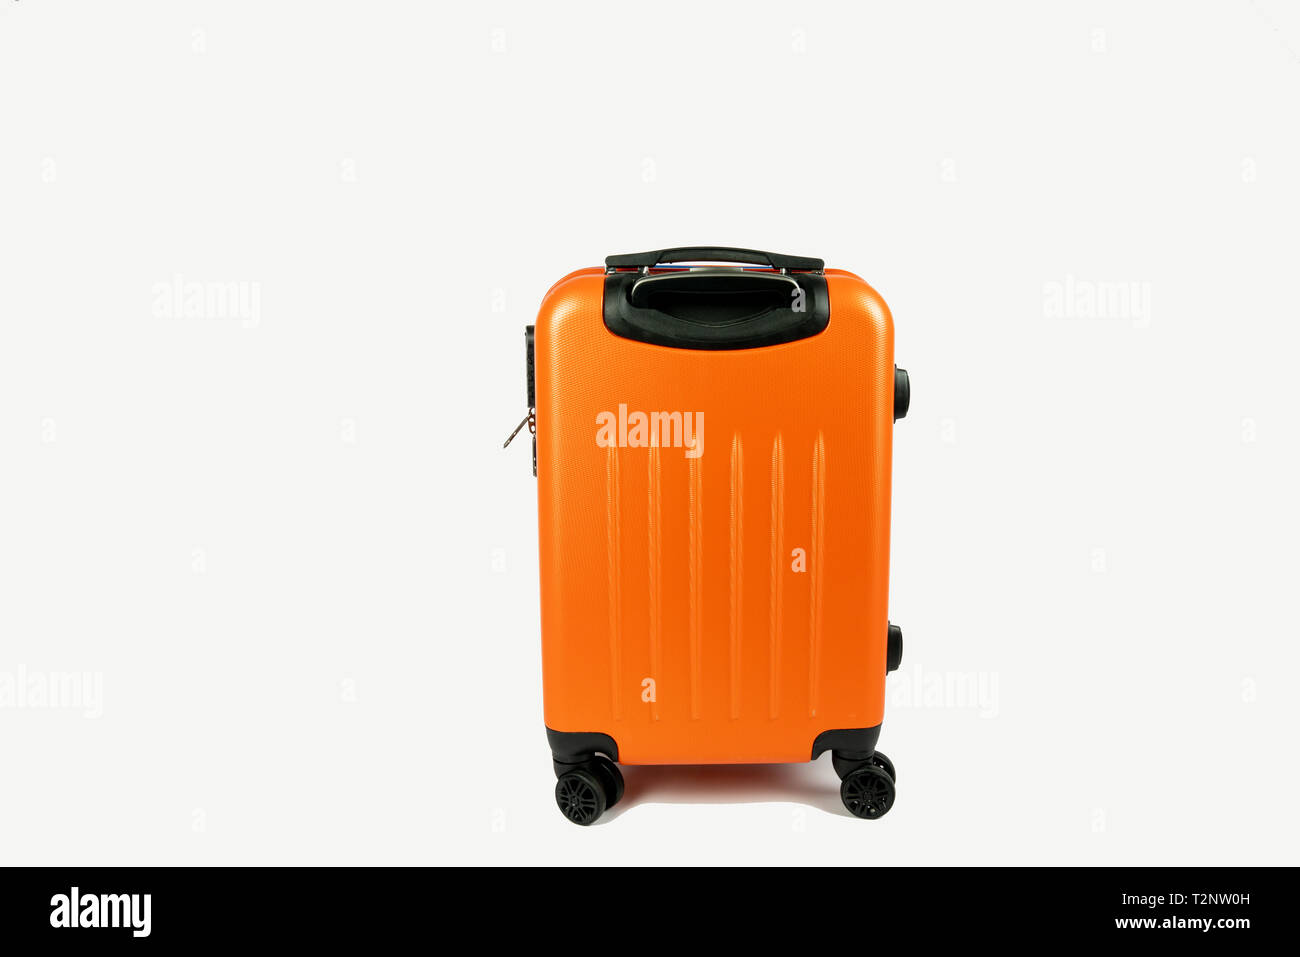 Valise orange moderne. Prêt à aller pour vos vacances ou voyage d'affaires. La valise est sur fond blanc avec l'espace à côté de votre propre texte. Banque D'Images